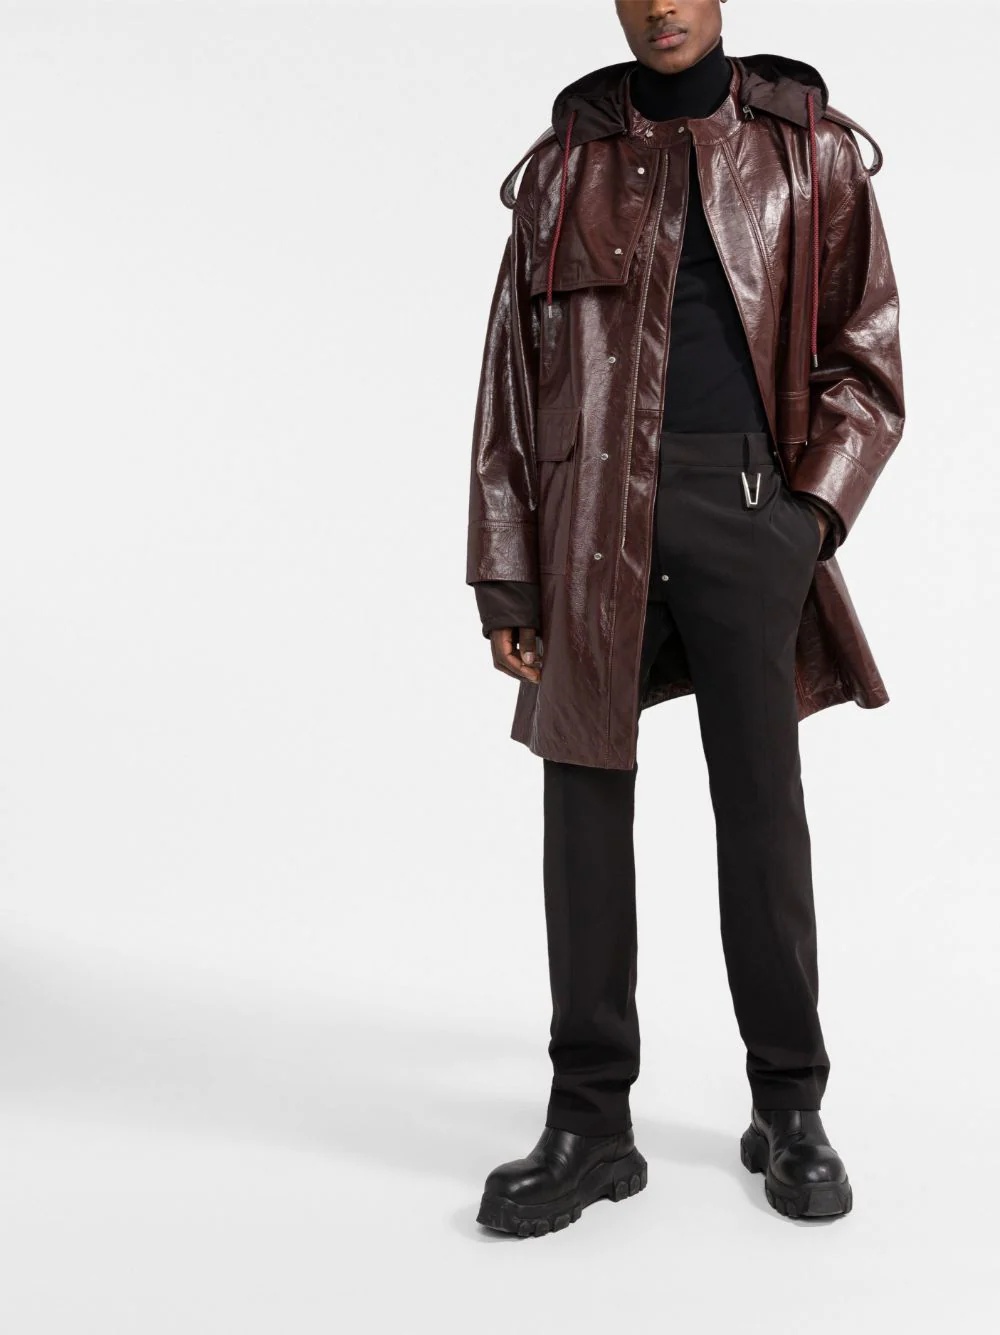 zipped-up leather coat - 2